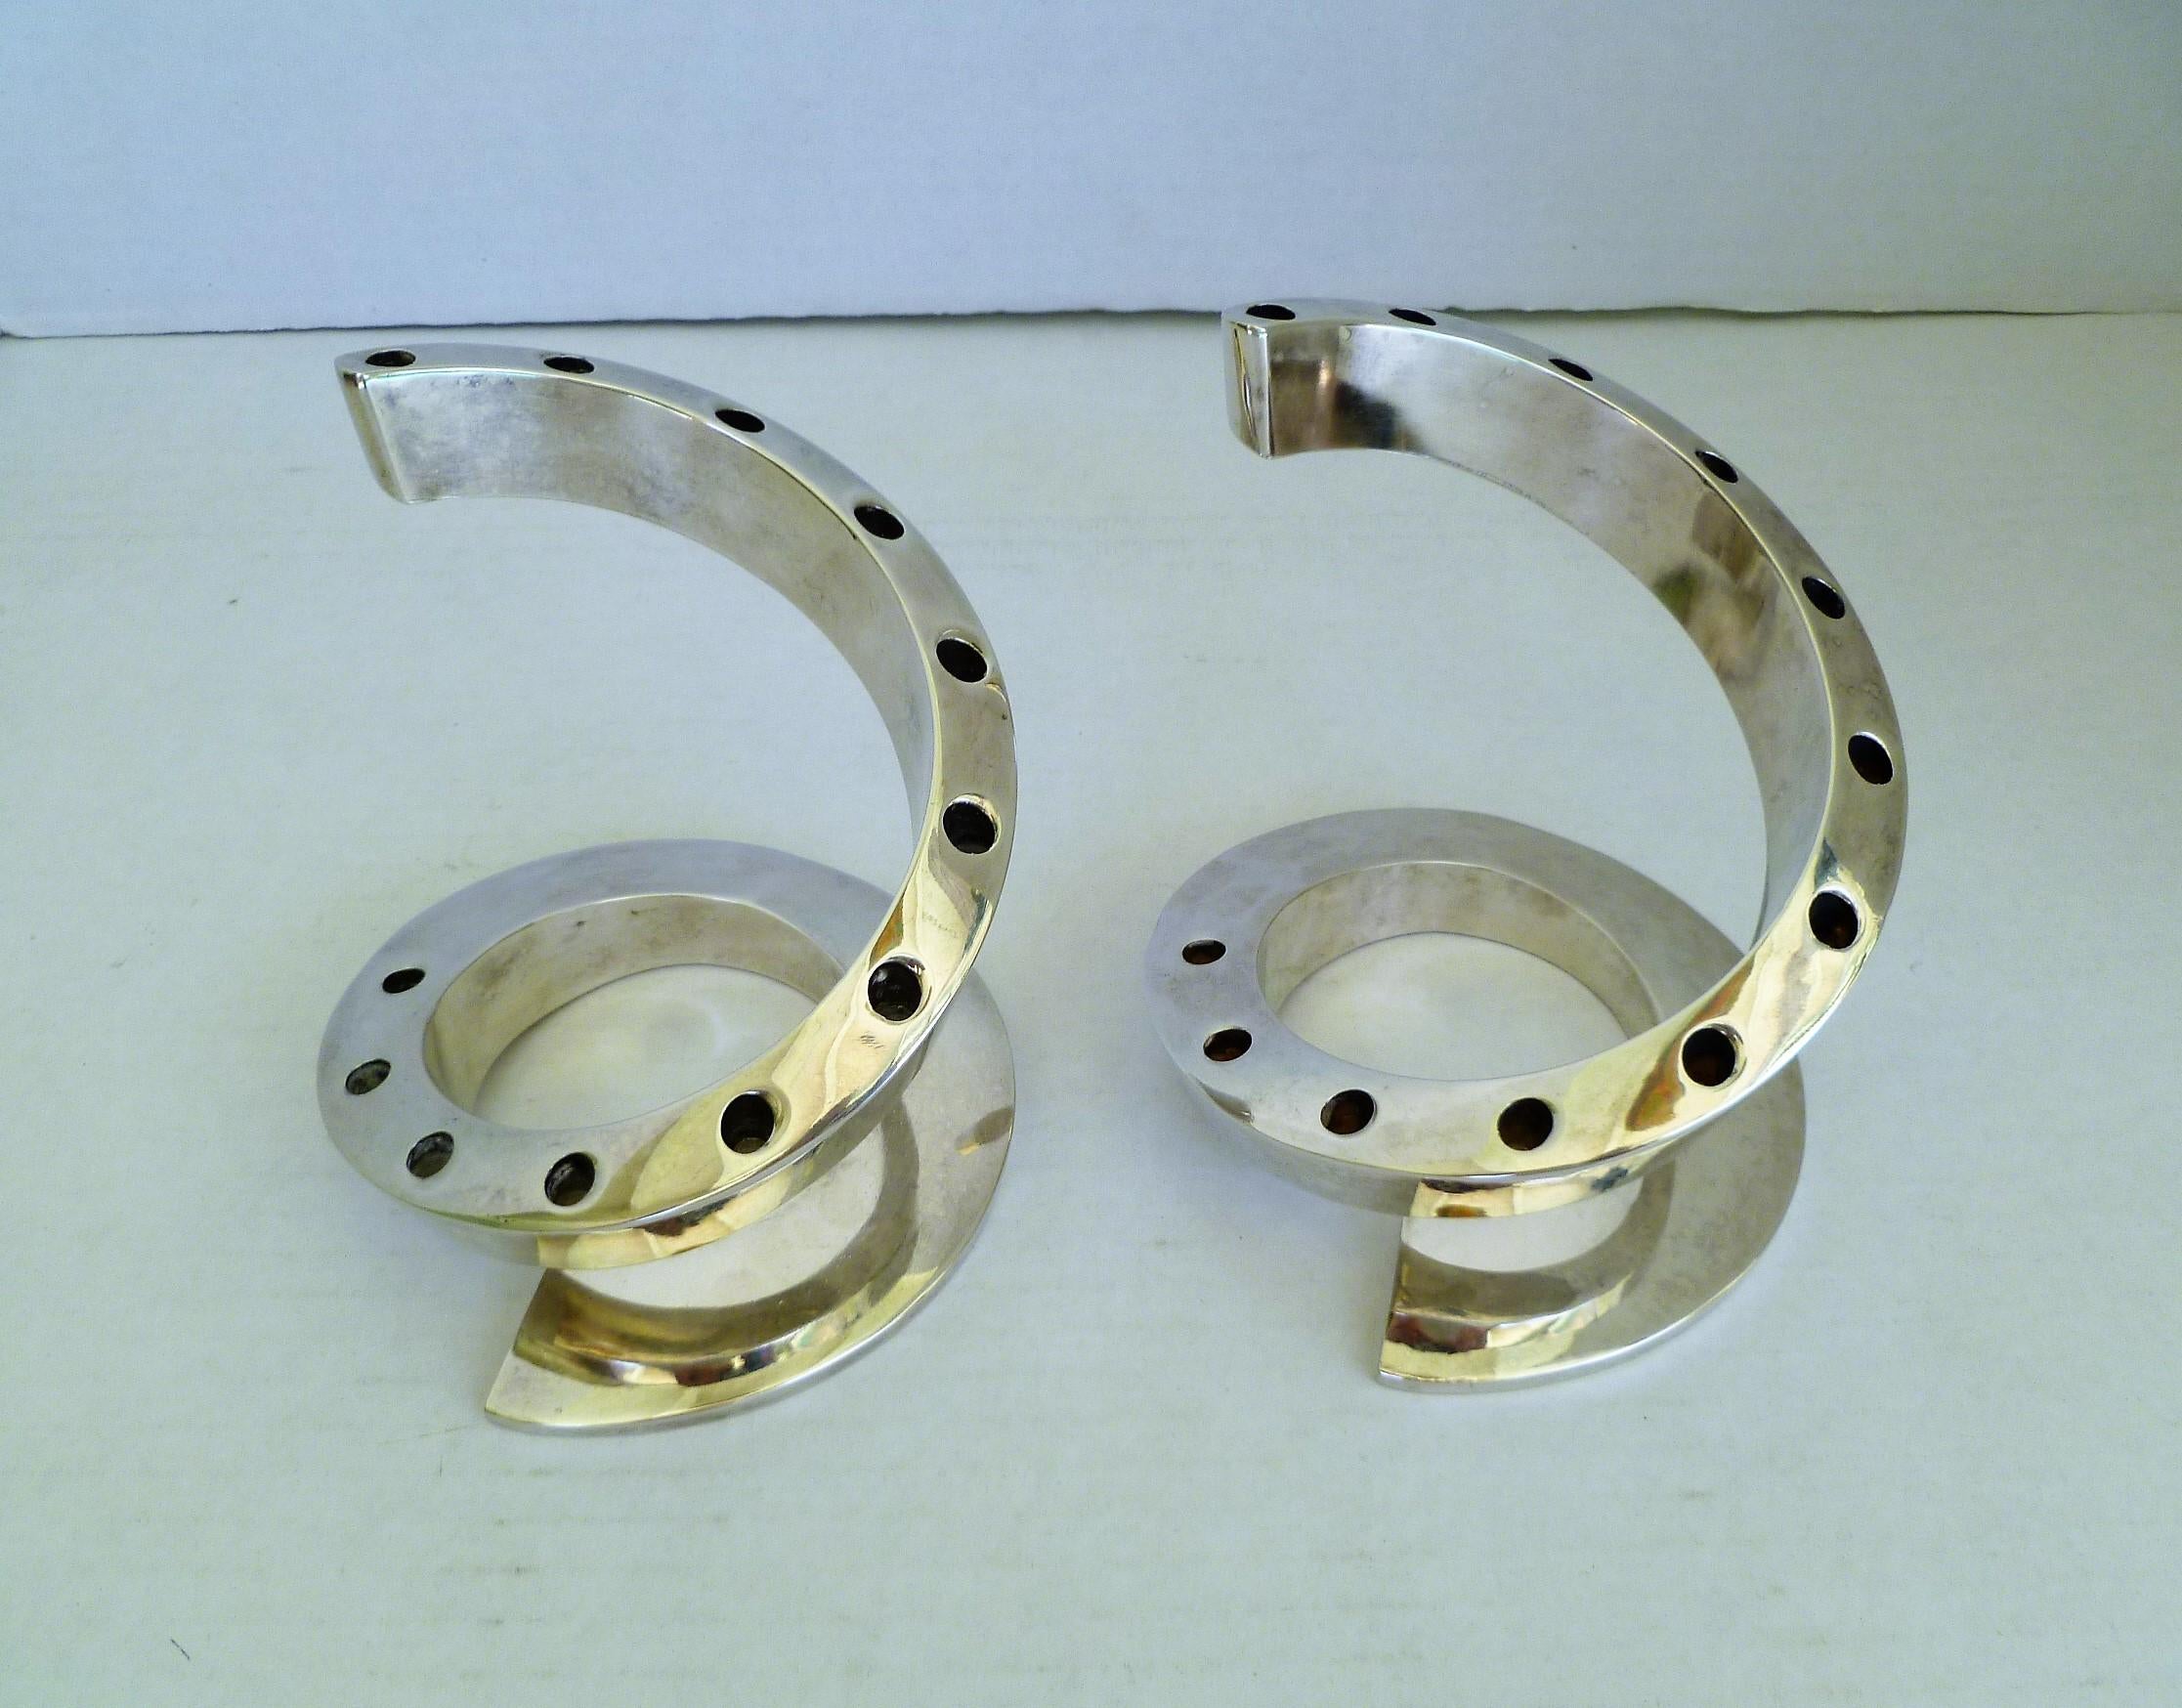 Créée par le designer suédois Bertil Vallien pour Dansk Designs dans les années 1970, cette paire de chandeliers en métal argenté lourd de style Space Age Modern Spiral Swirl. Fabriqués au Japon, les supports pour 12 longues bougies effilées, le